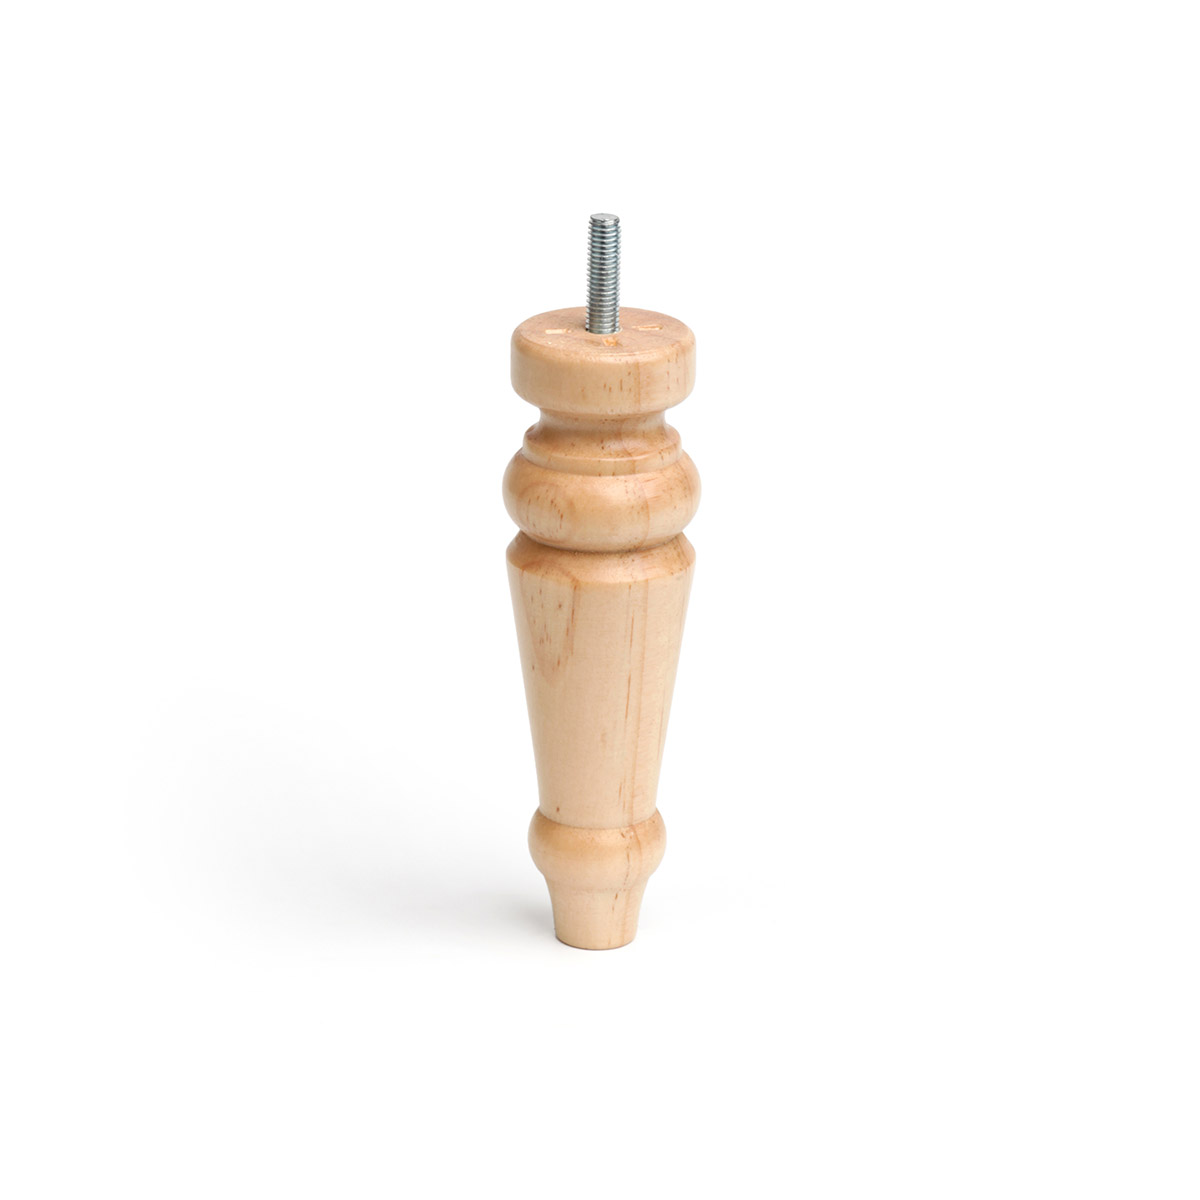 Pied conique en bois d'une hauteur de 150 mm et finition pin transparent. Dimensions: 46x46x150 mm